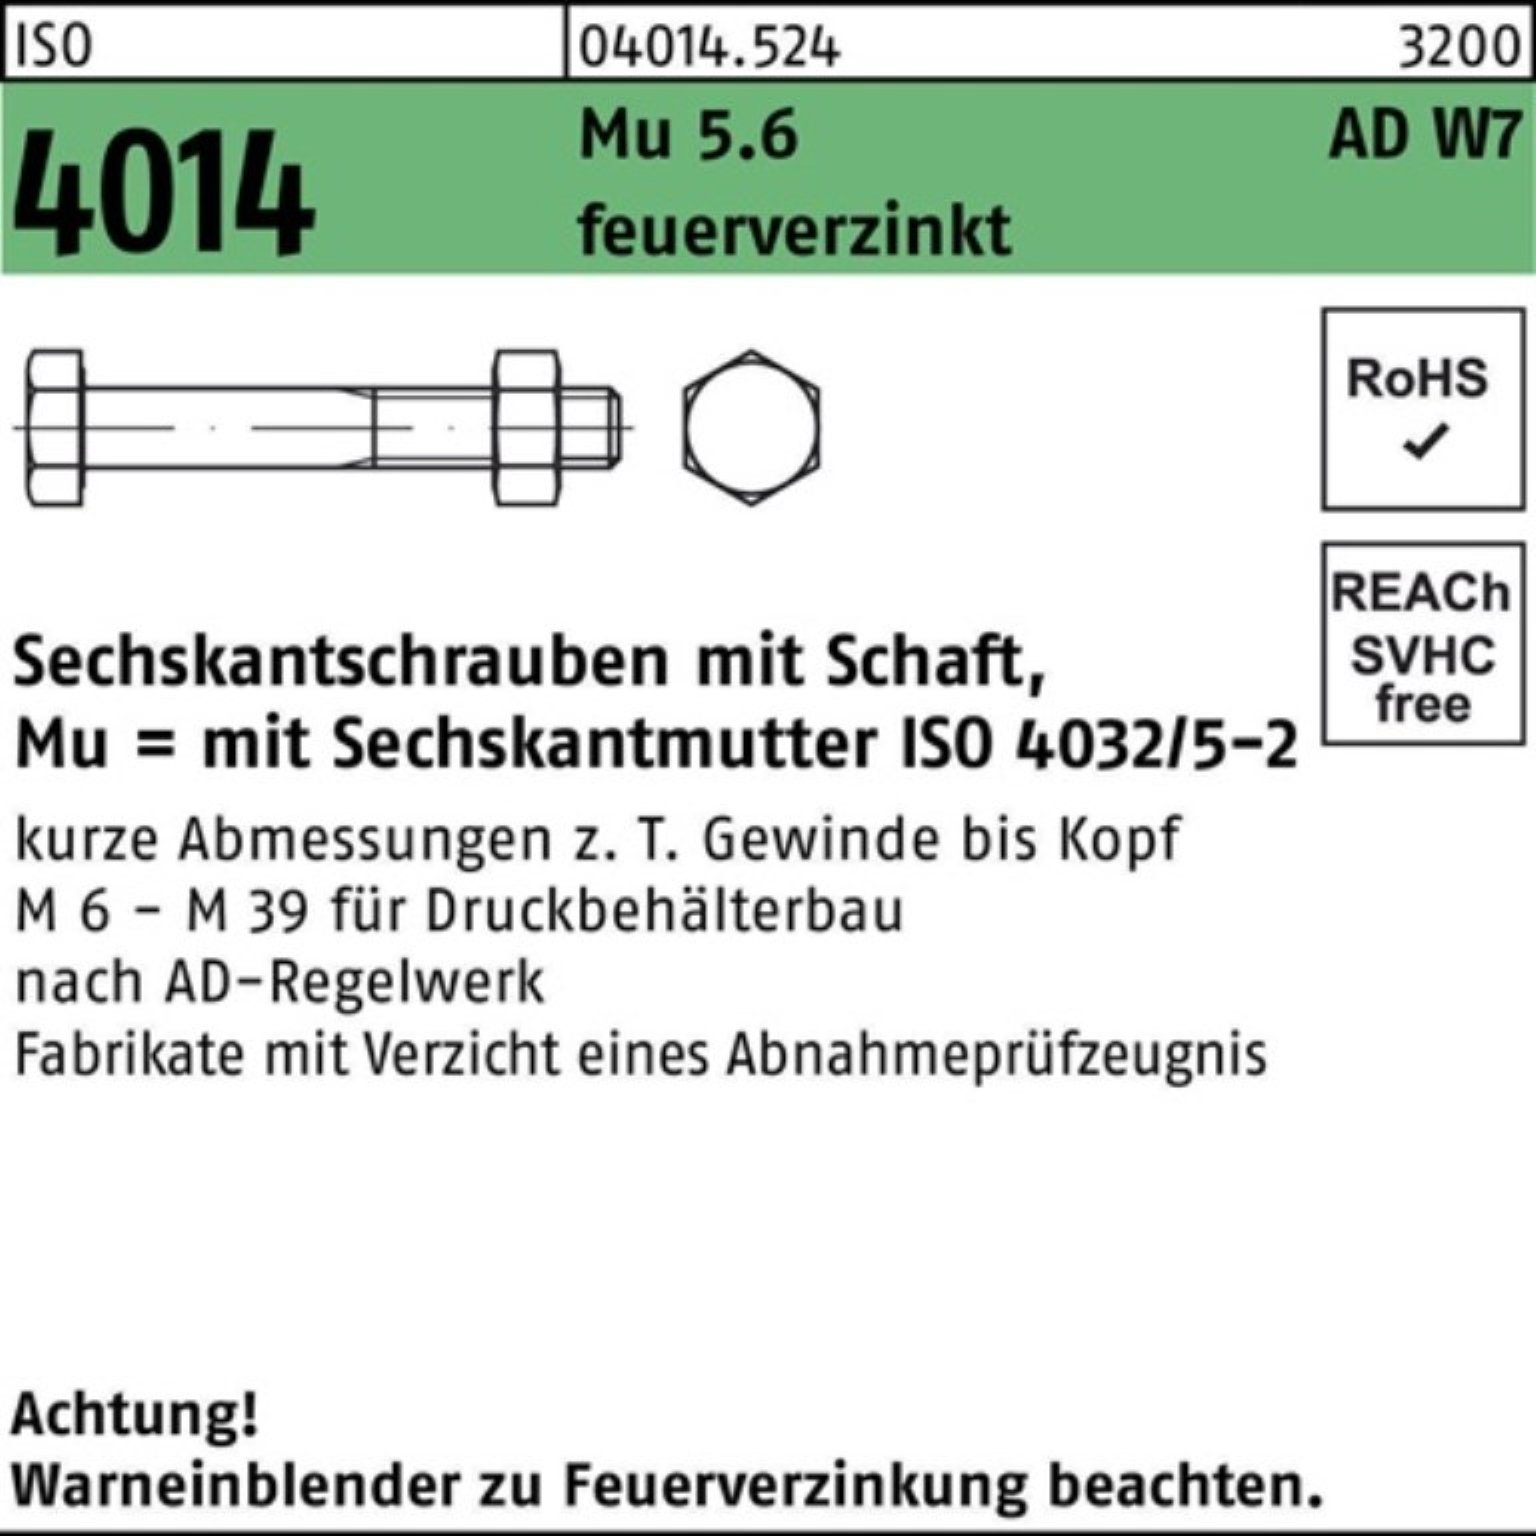 ISO Sechskantschraube 5.6 feuerve 4014 M20x Sechskantschraube Schaft 100er W7 Bufab 80 Mu Pack